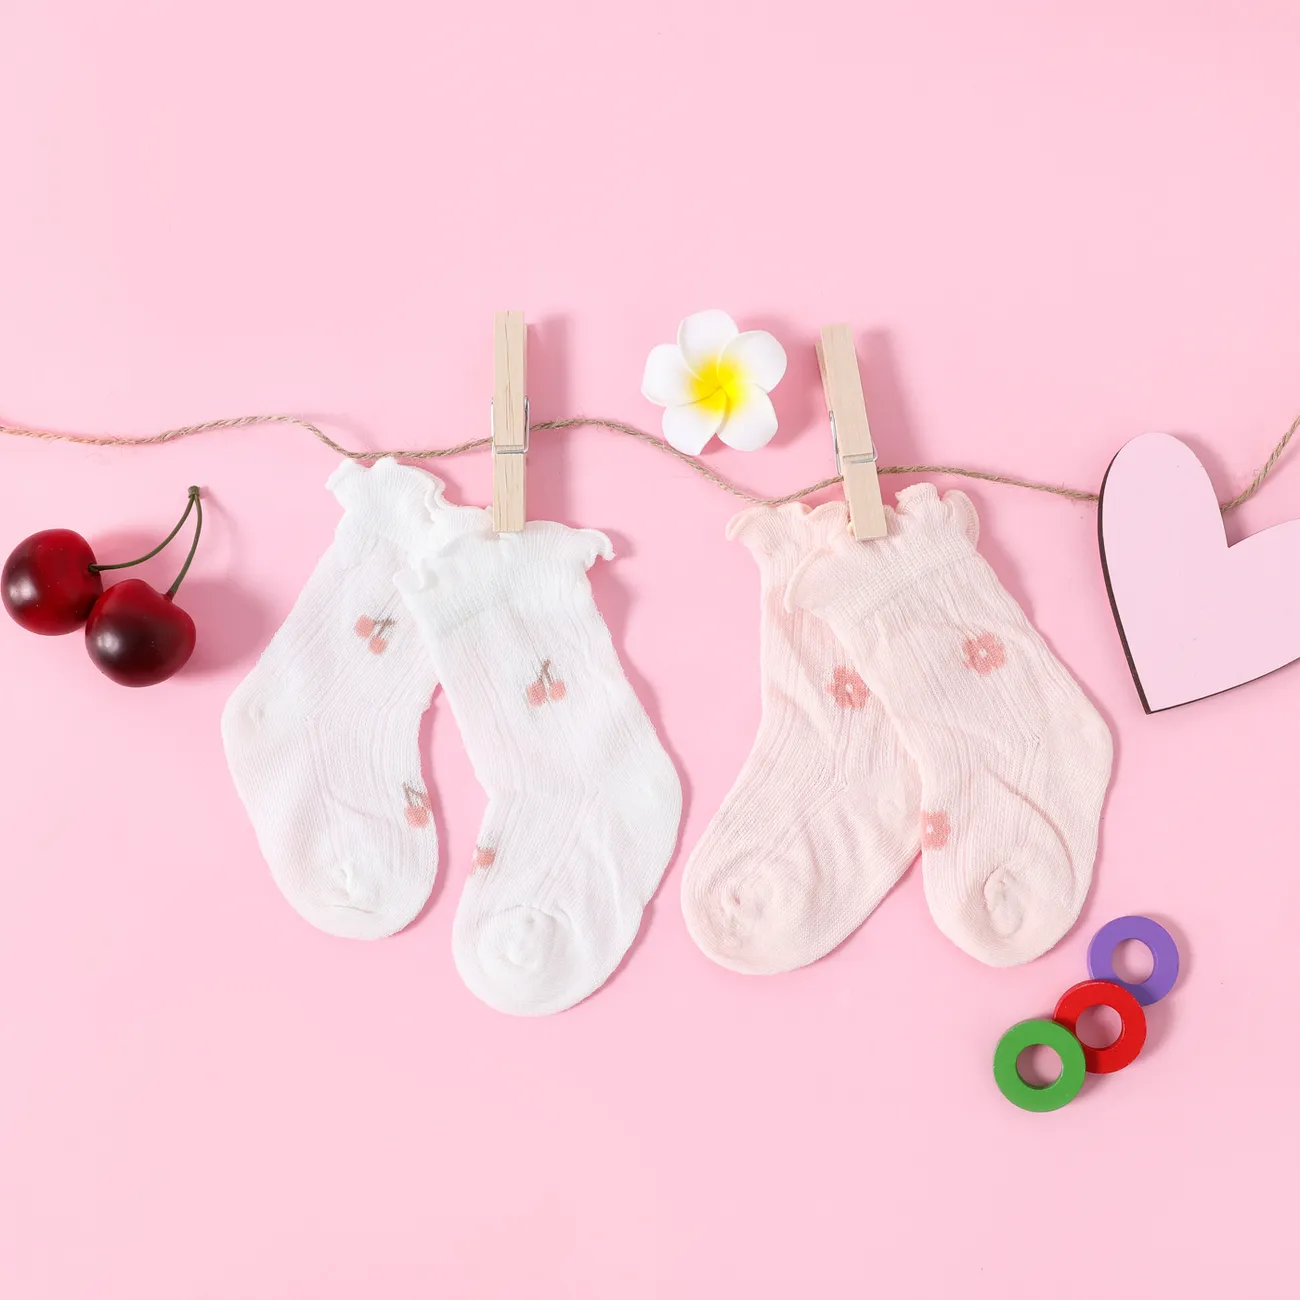 جوارب شبكية للأطفال / طفل صغير مزخرفة بالزهور الكرز والخس أبيض big image 1